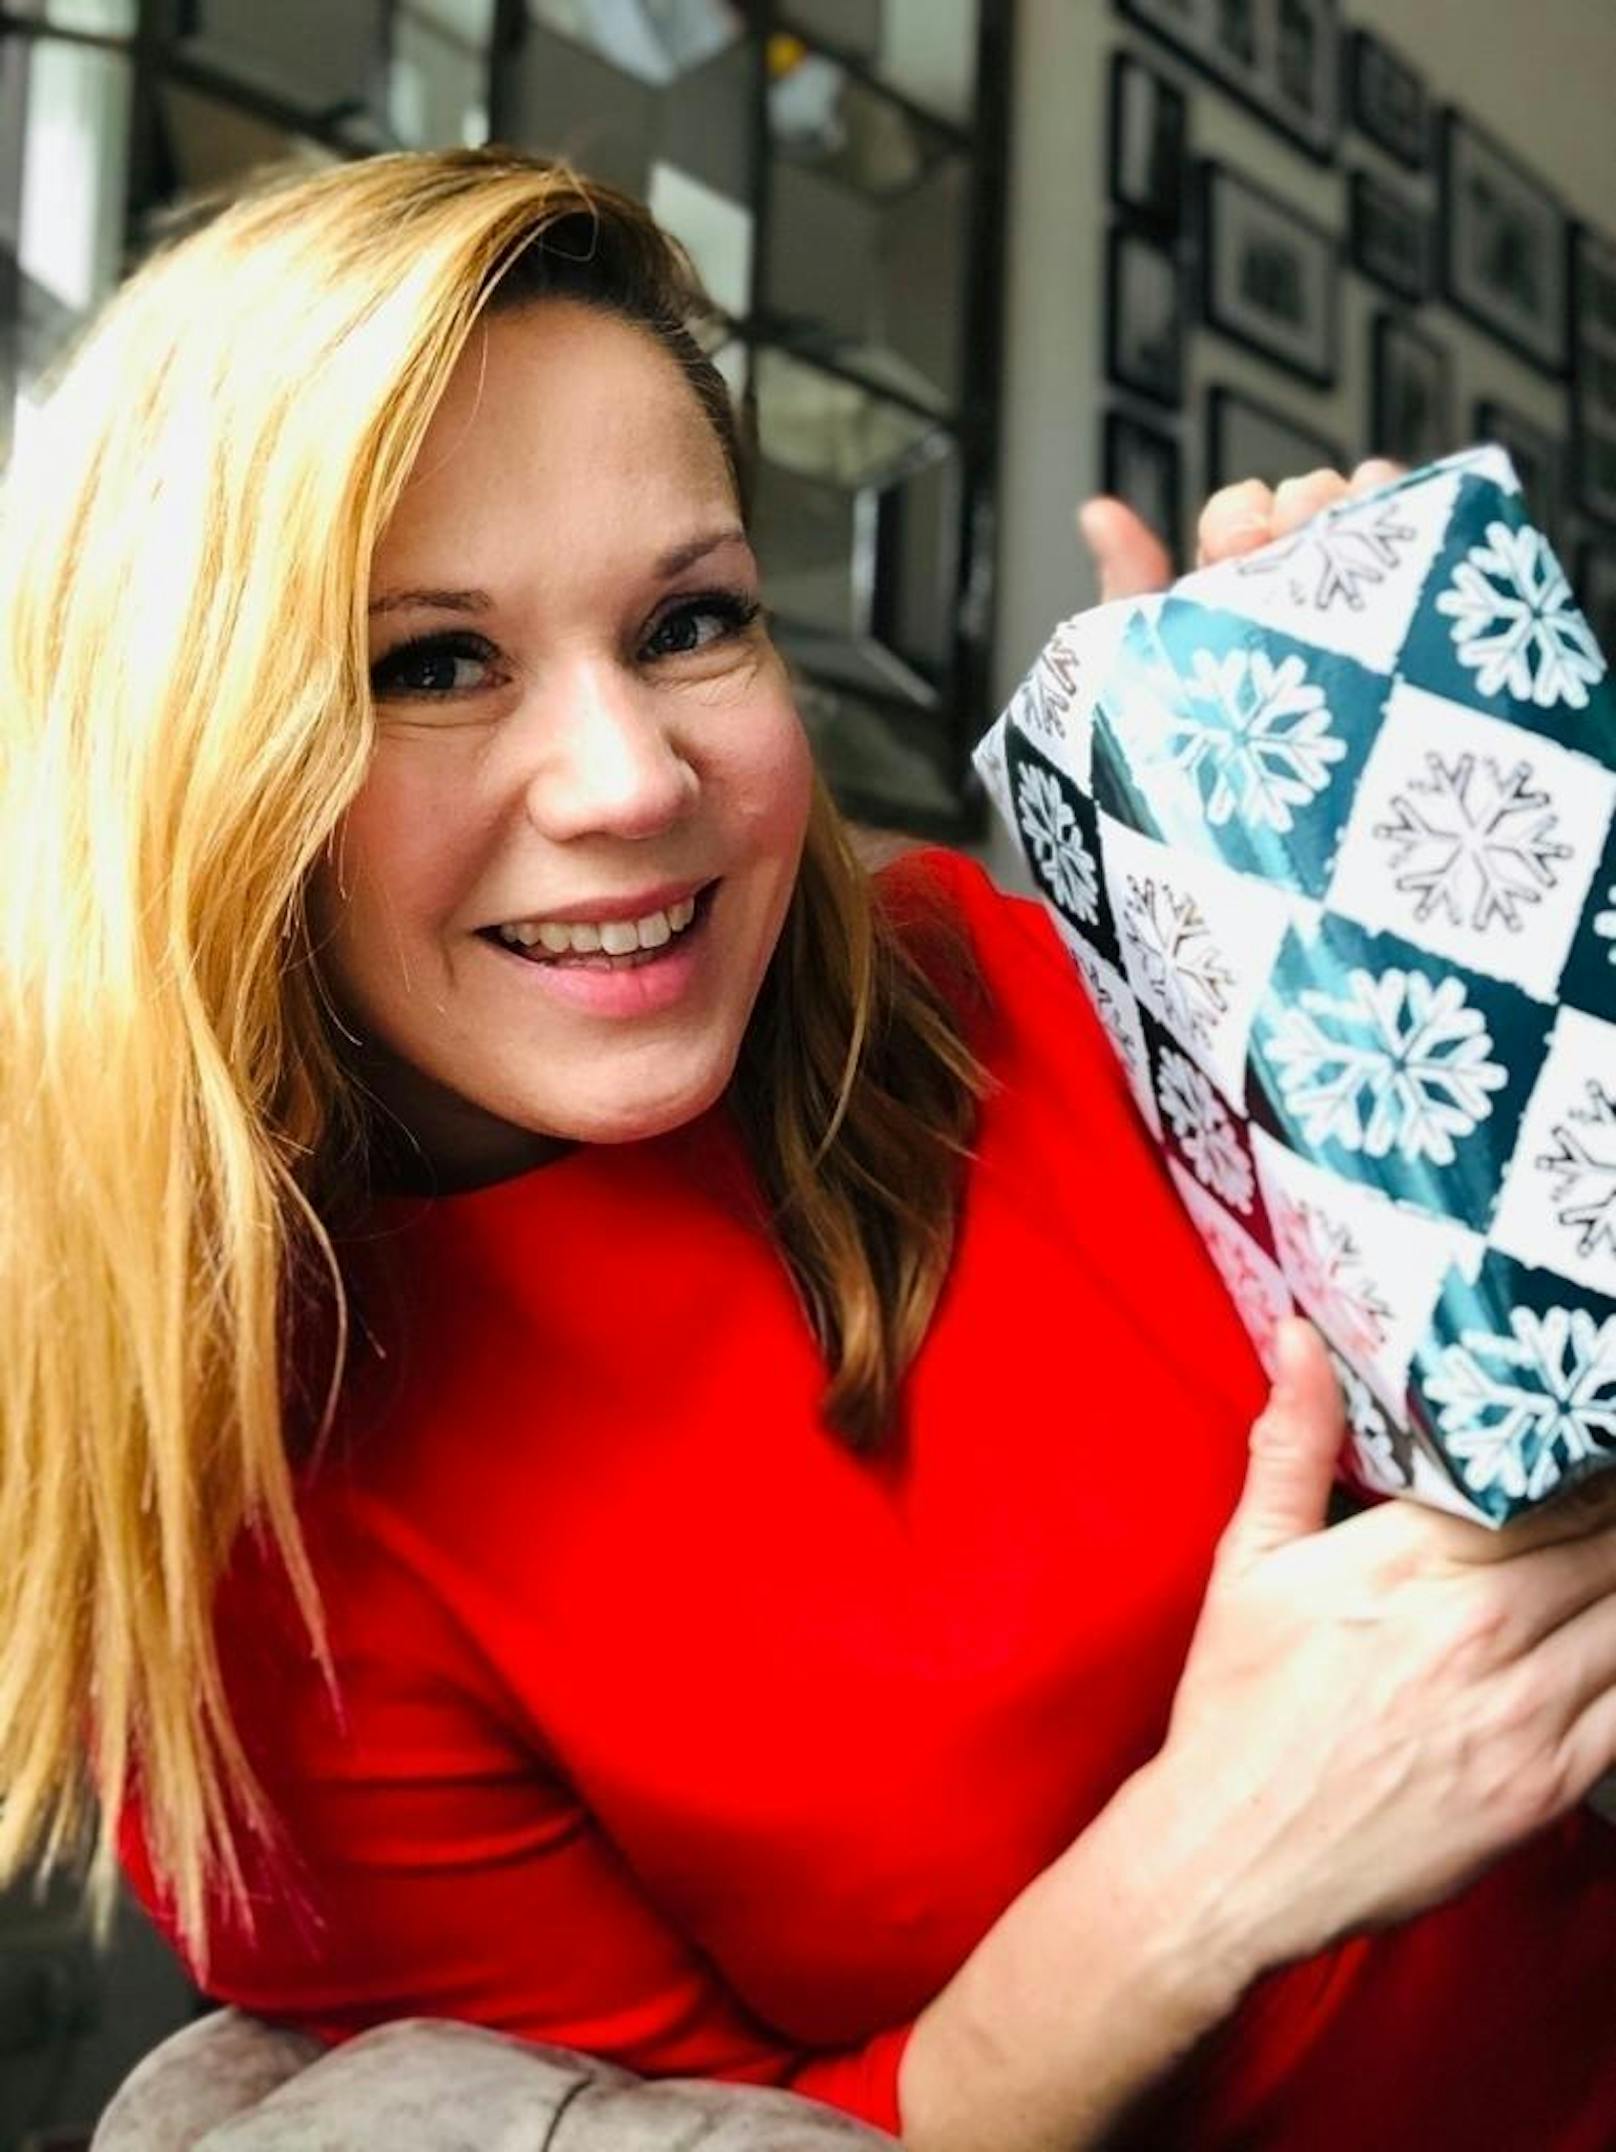 Beide sind TV-Frühstückerinnen des Landes und beide sind 2019 Mutter geworden. <b>Johanna Setzer</b> feiert mit Familie in Wien. "Das erste Weihnachten mit meinem Babymann", lacht sie.